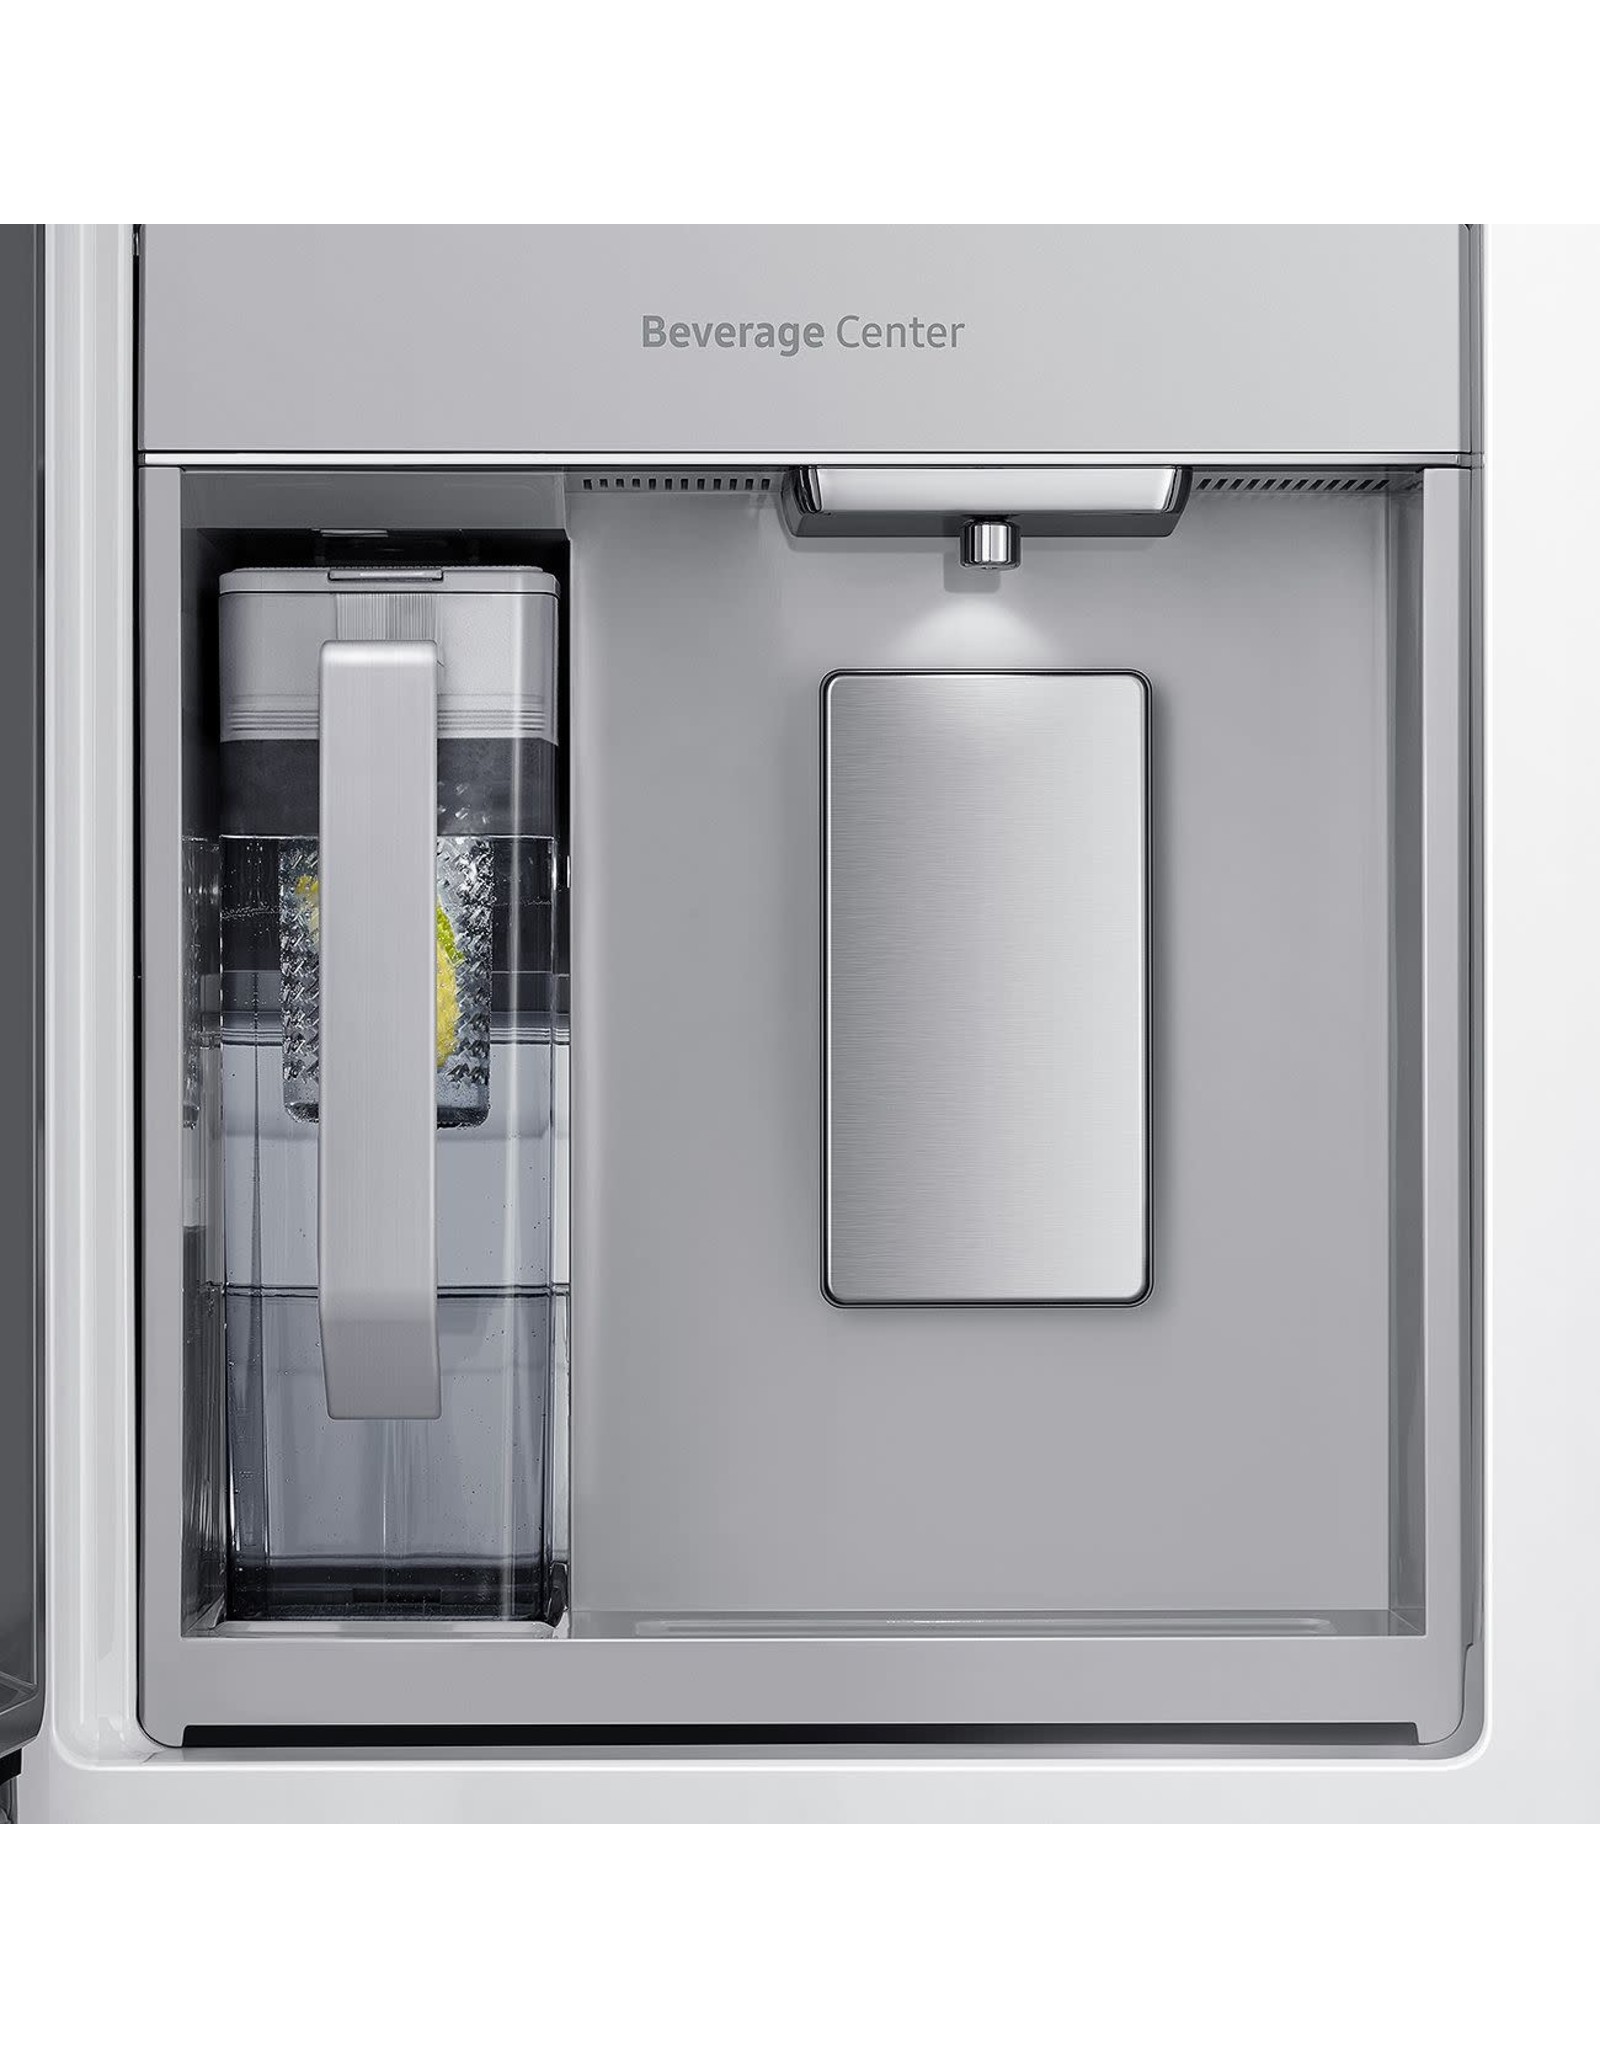 SAMSUNG RF29A9671SR  29 cu. ft. 4-Door Flex French Door Refrigerator in Fingerprint Resistant Stainless Steel with FlexZone